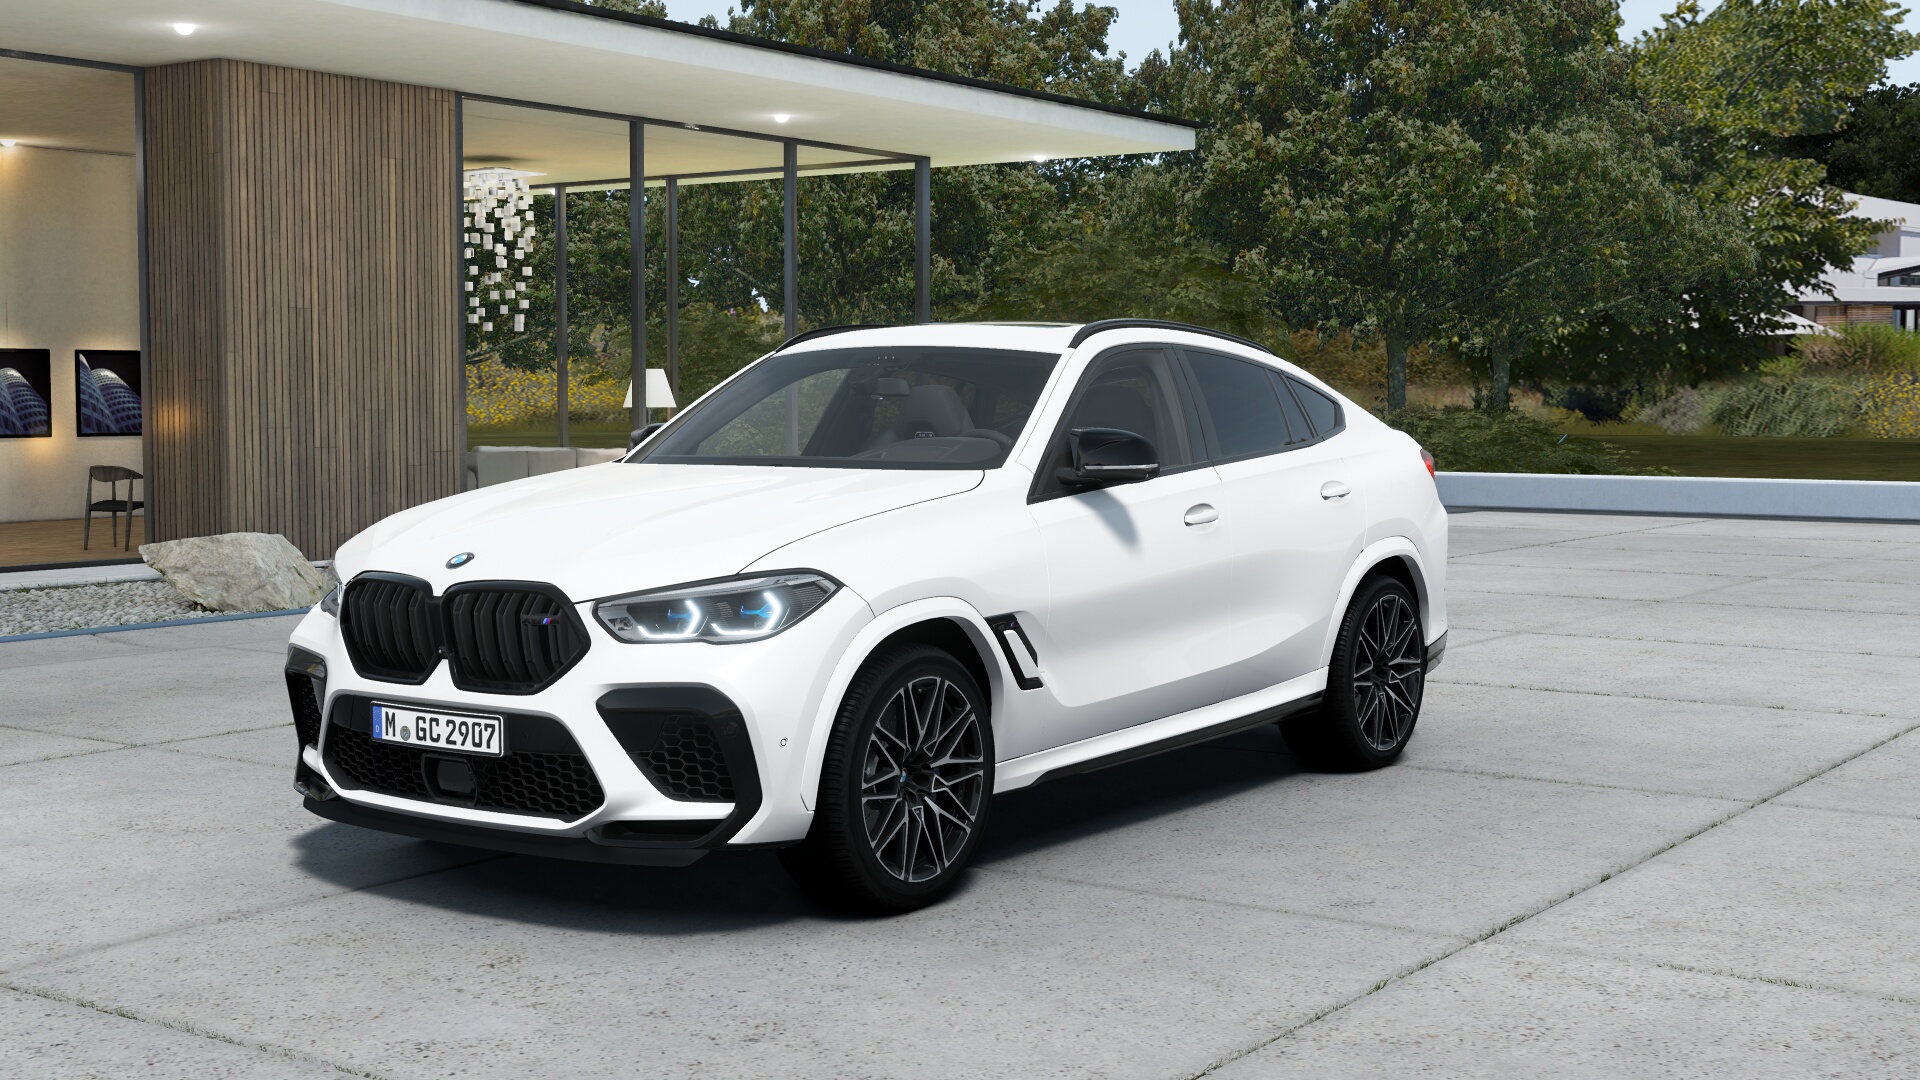 BMW X6 M COMPETITION xDrive | nové auto skladem | sportovně luxusní SUV coupé | V8 biturbo 625 koní | super výbava | akce | skvělá cena 2.999.000,- Kč bez DPH | přímo od českého autorizovaného prodejce | nákup online na AUTOiIBUY.com